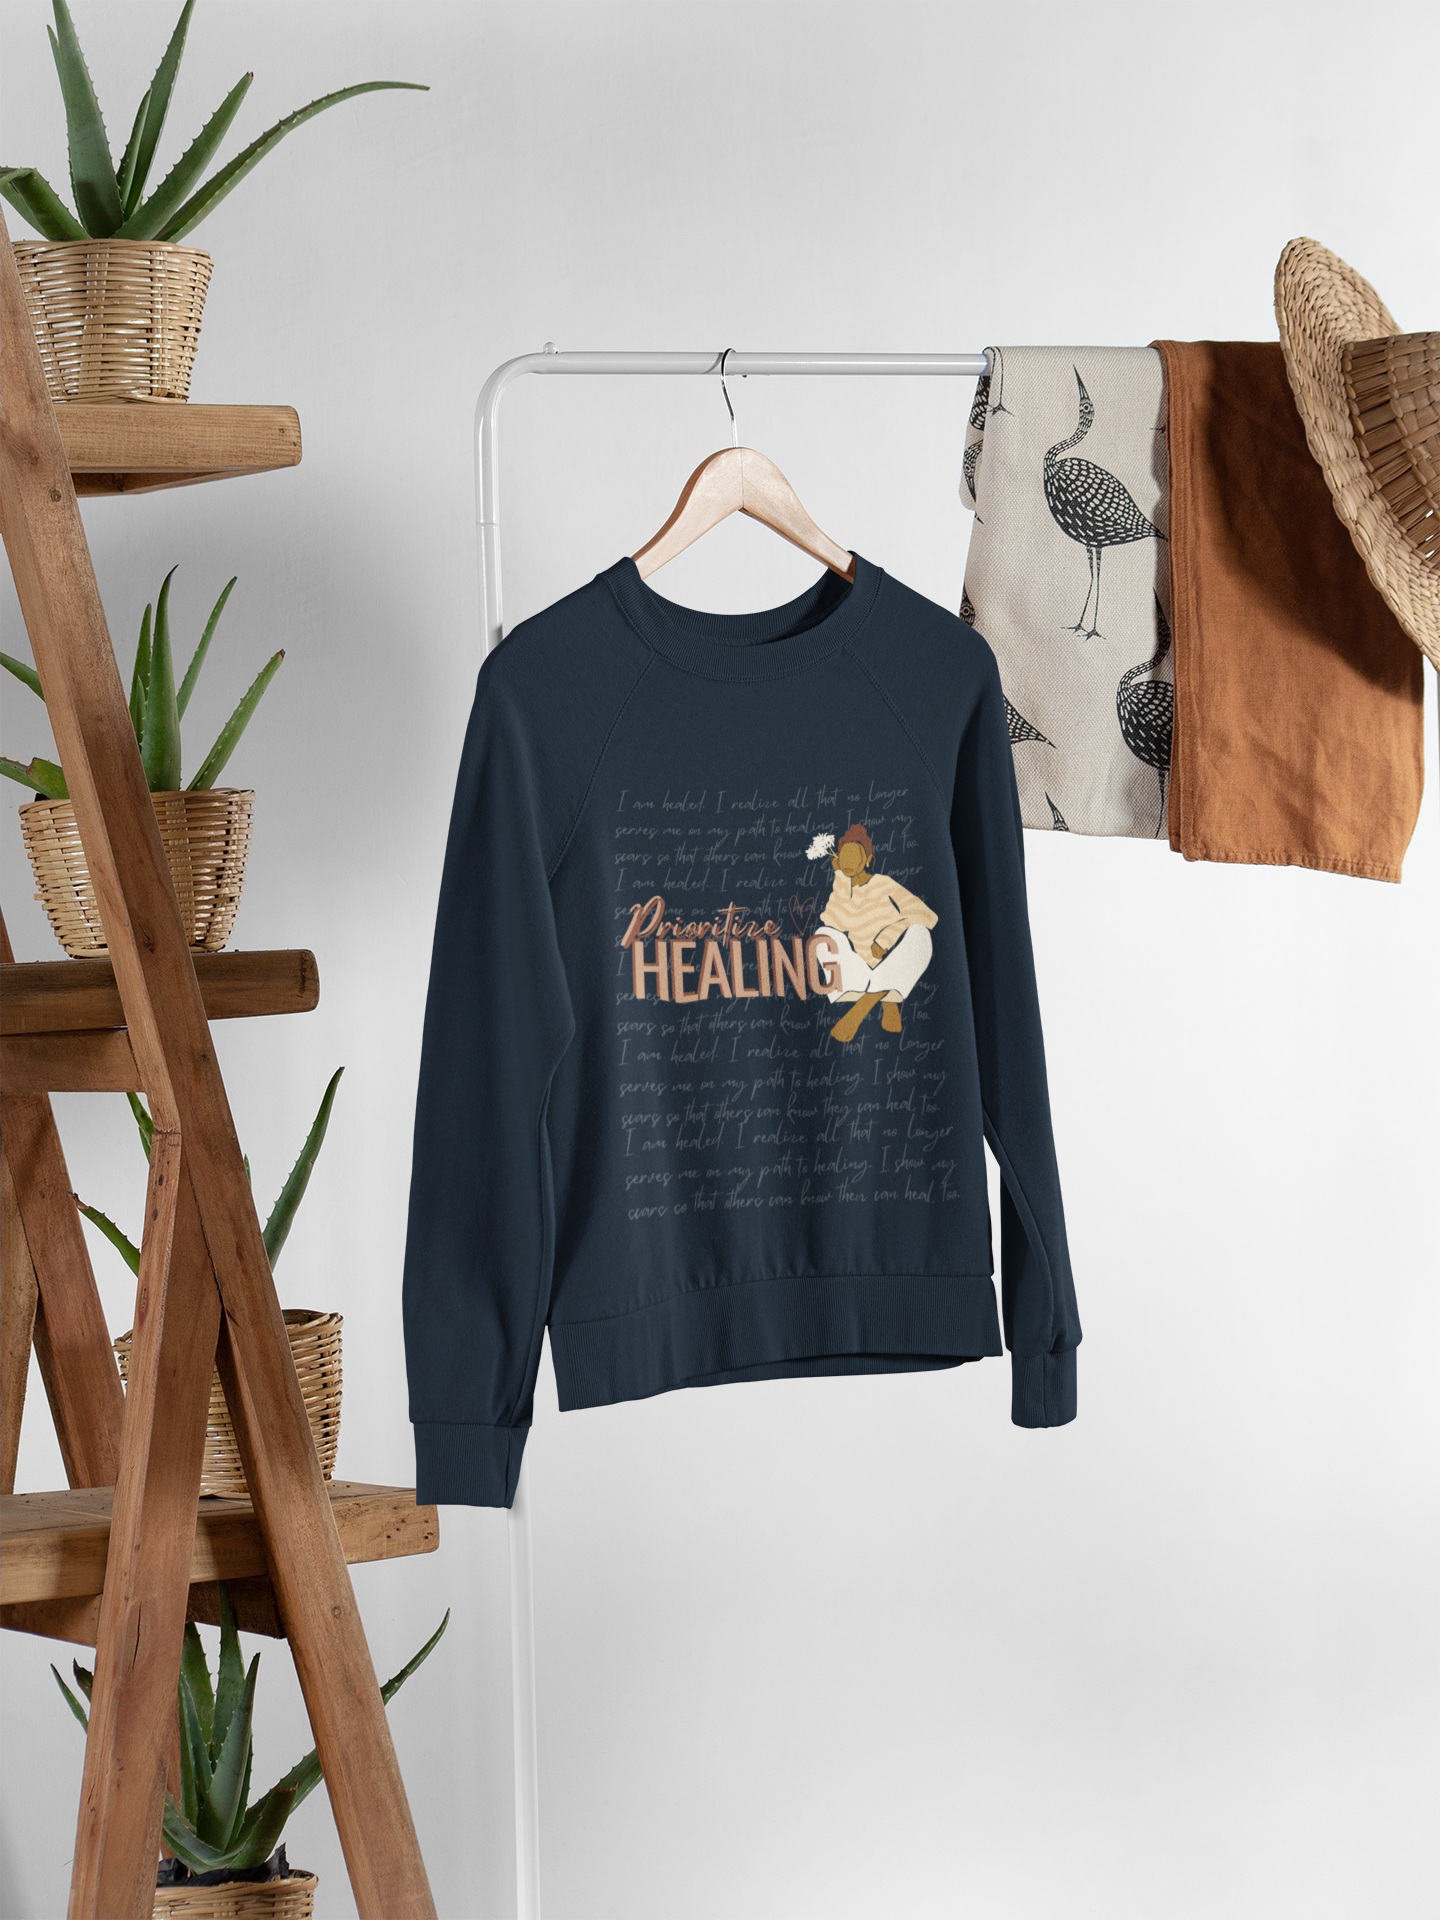 Prioritize Healing Crewneck Sweatshirt